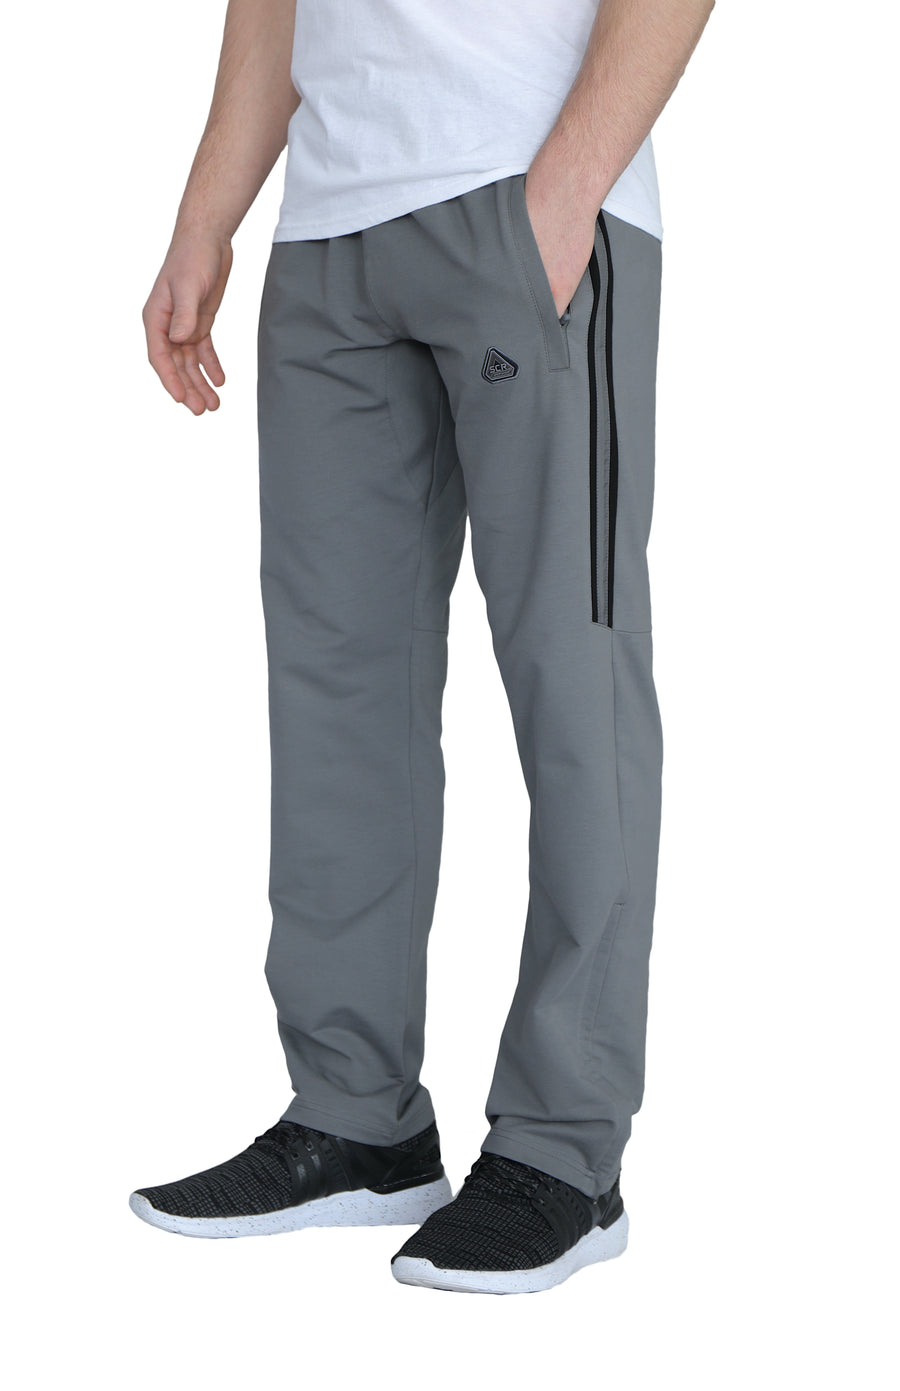 SCR Sportswear, sweatpants by length. : r/tall